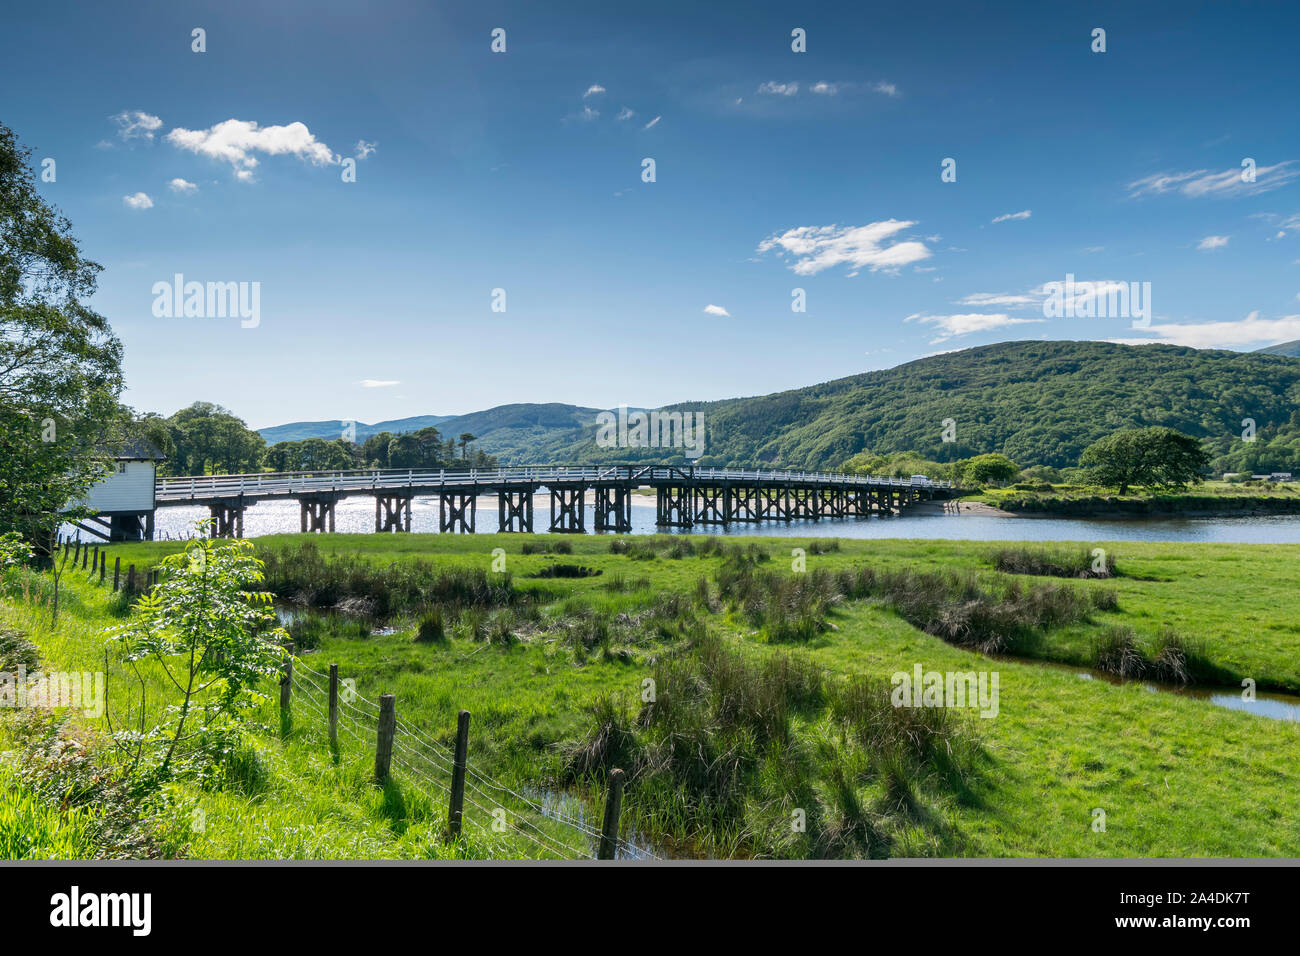 Penmaenpool ponte a pedaggio in Gwynedd sulla Mawddach estuary Foto Stock